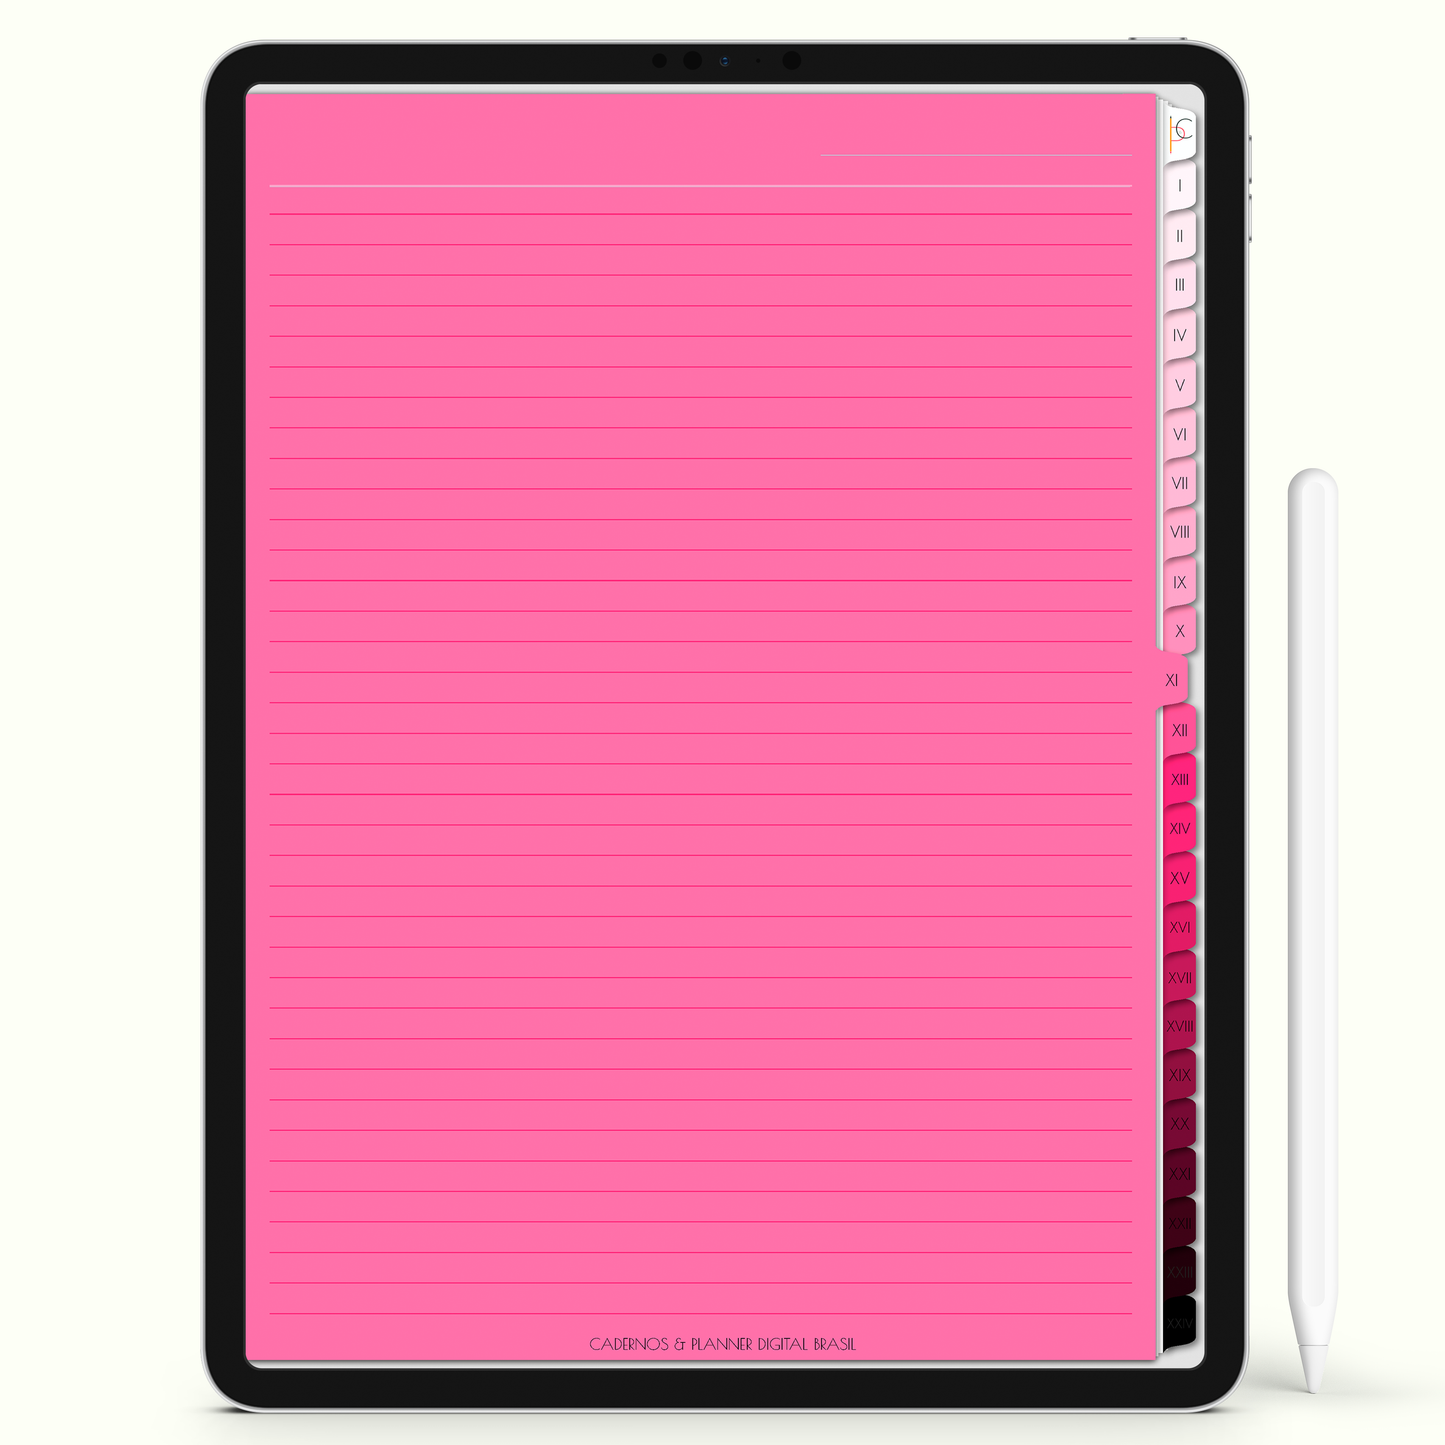 Caderno Digital Blush Mistério da Noite 24 Matérias • Para iPad e Tablet Android • Download instantâneo • Sustentável